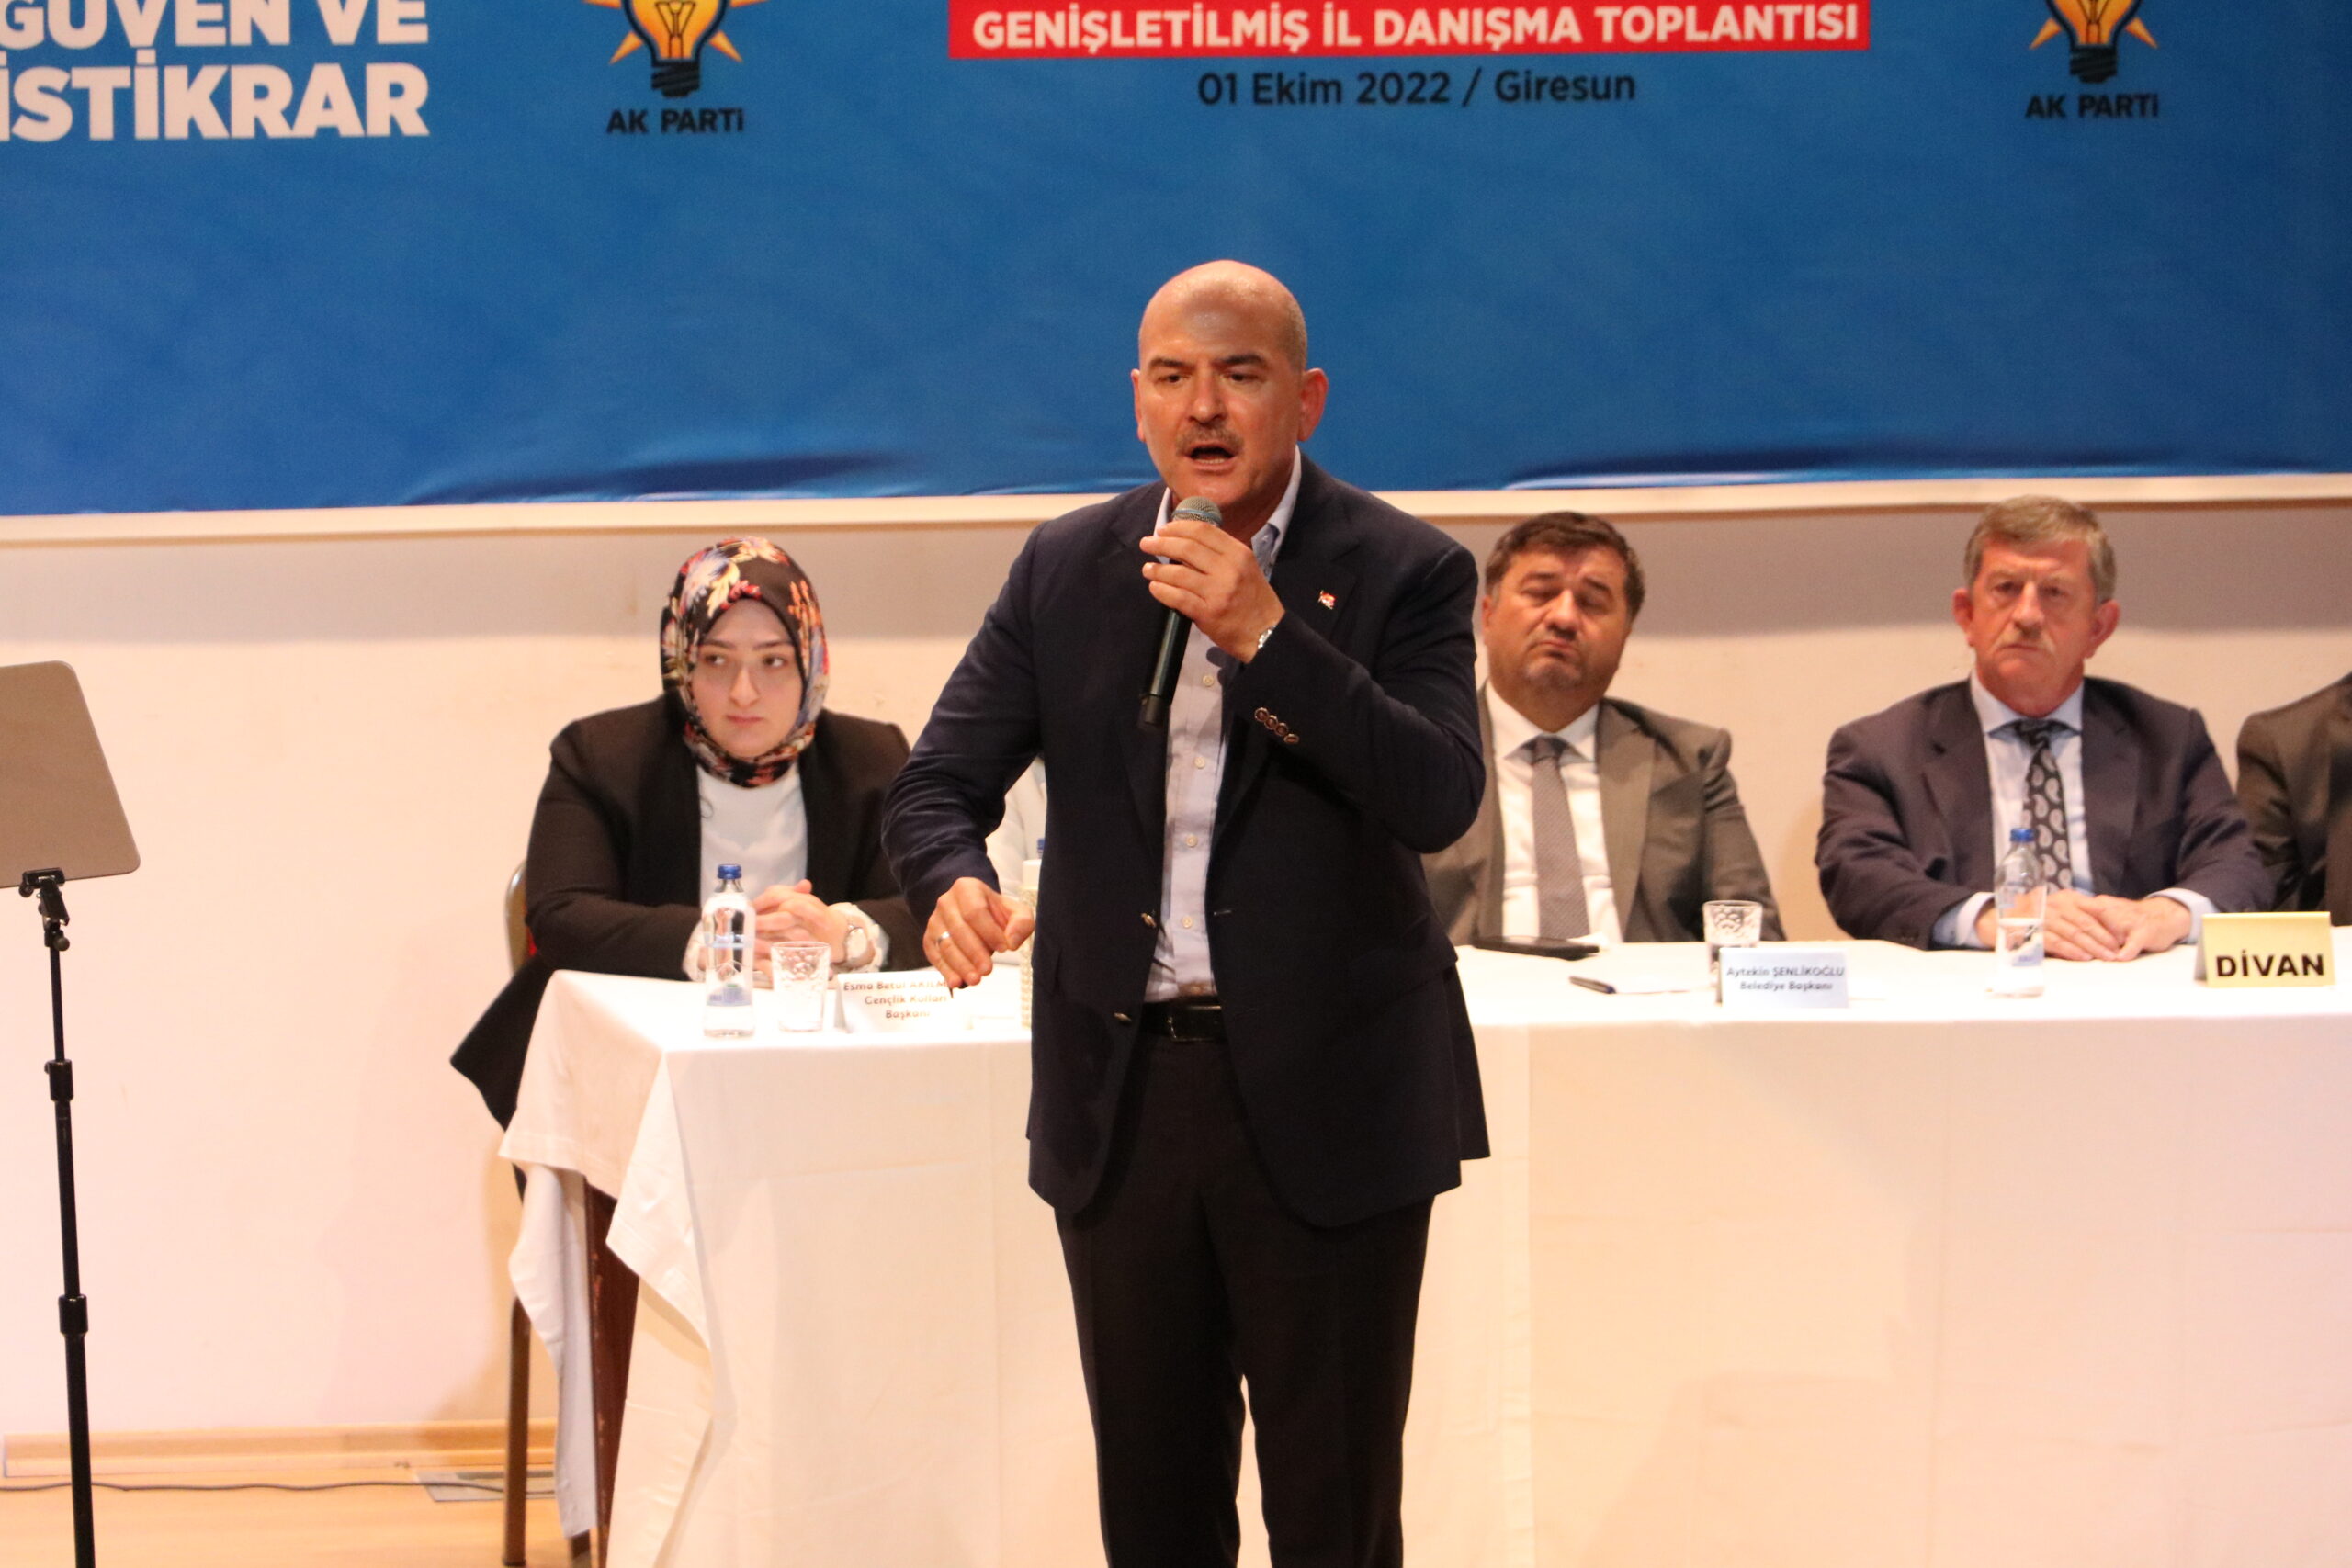 İçişleri Bakanı Süleyman Soylu, Mersin’deki polisevi saldırısına ilişkin konuştu: